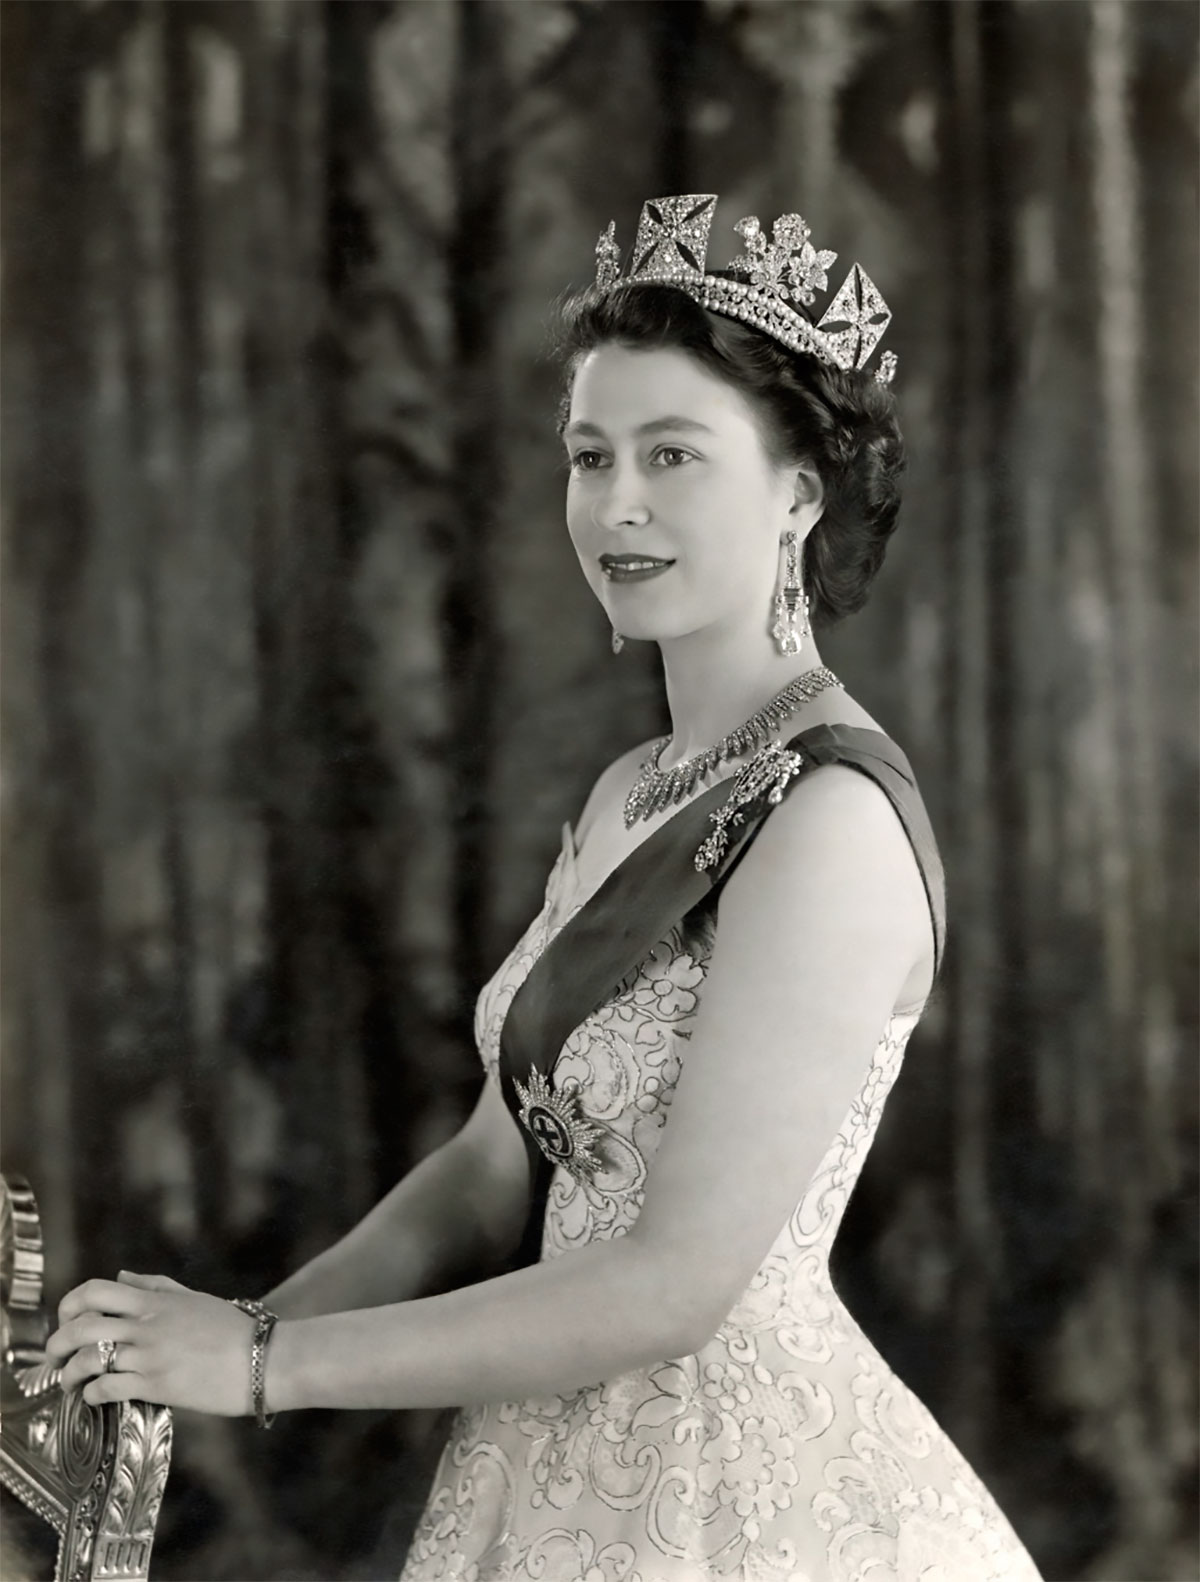 Queen Elizabeth's Jewels